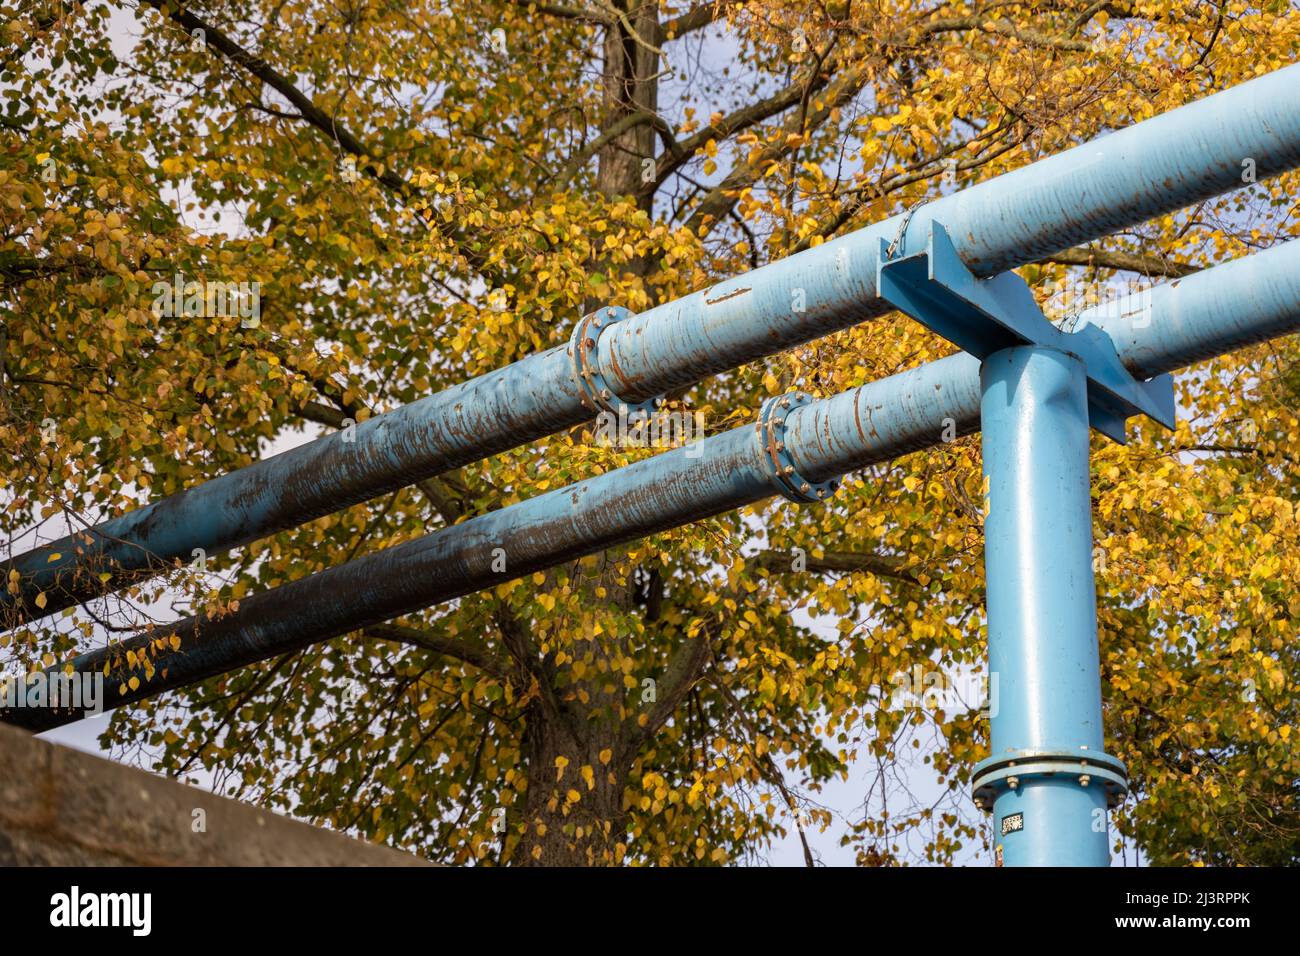 Tubi di costruzione blu di fronte ad un albero con foglie di autunno gialle. Pipeline di approvvigionamento sporche e con intemperie nella natura. Industria e ambiente. Foto Stock